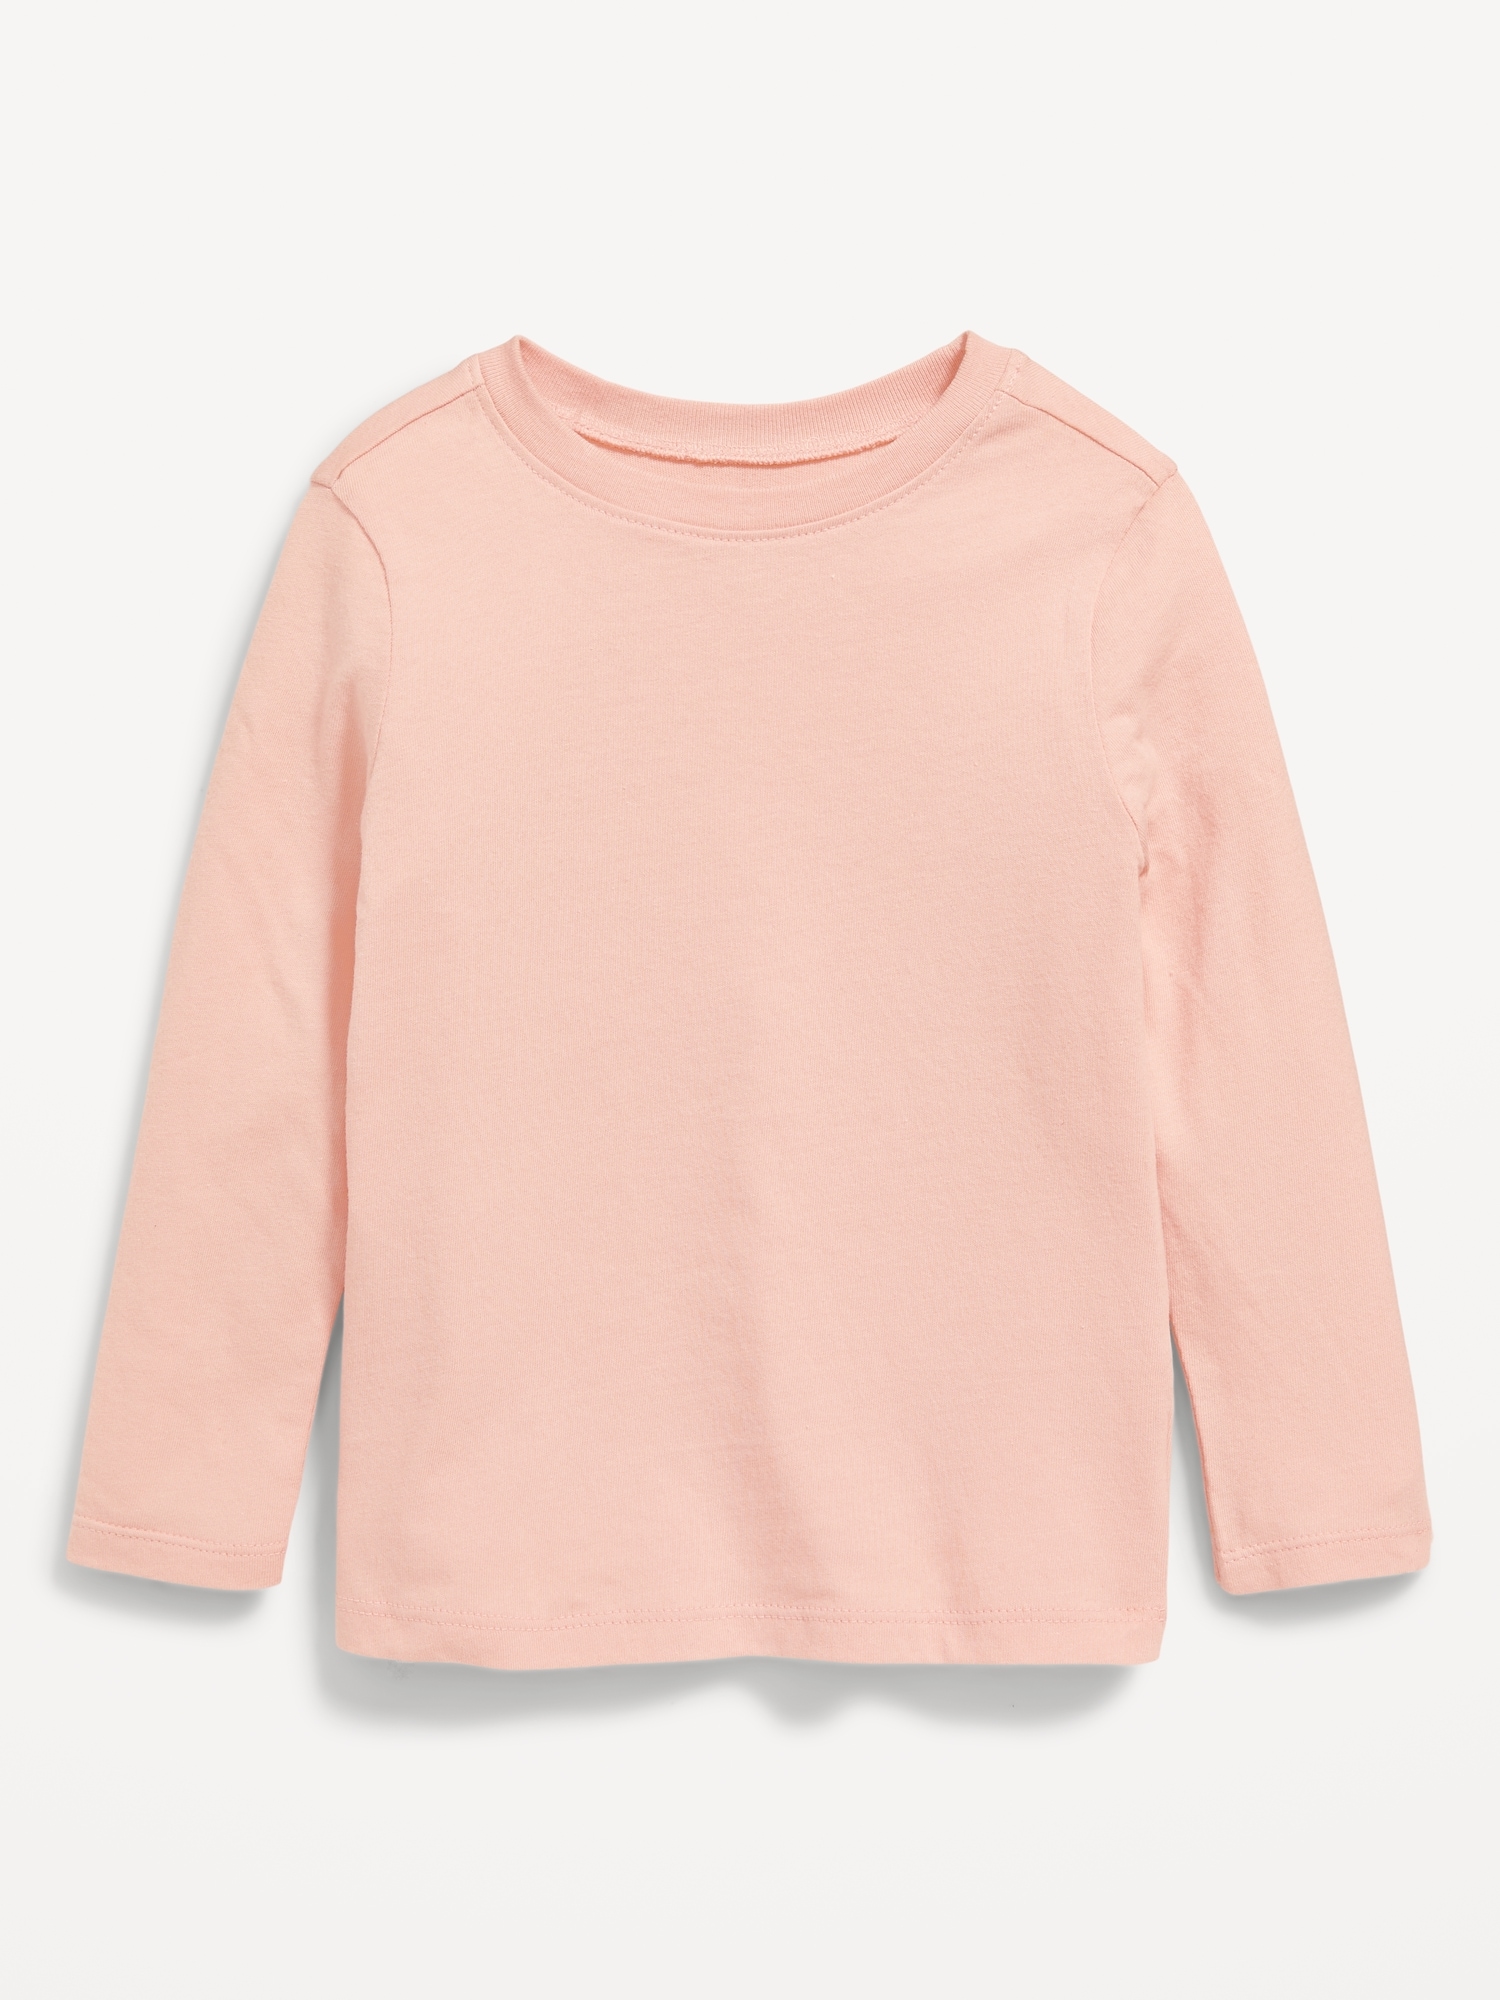 Unisex Long-Sleeve T-Shirt for Toddler